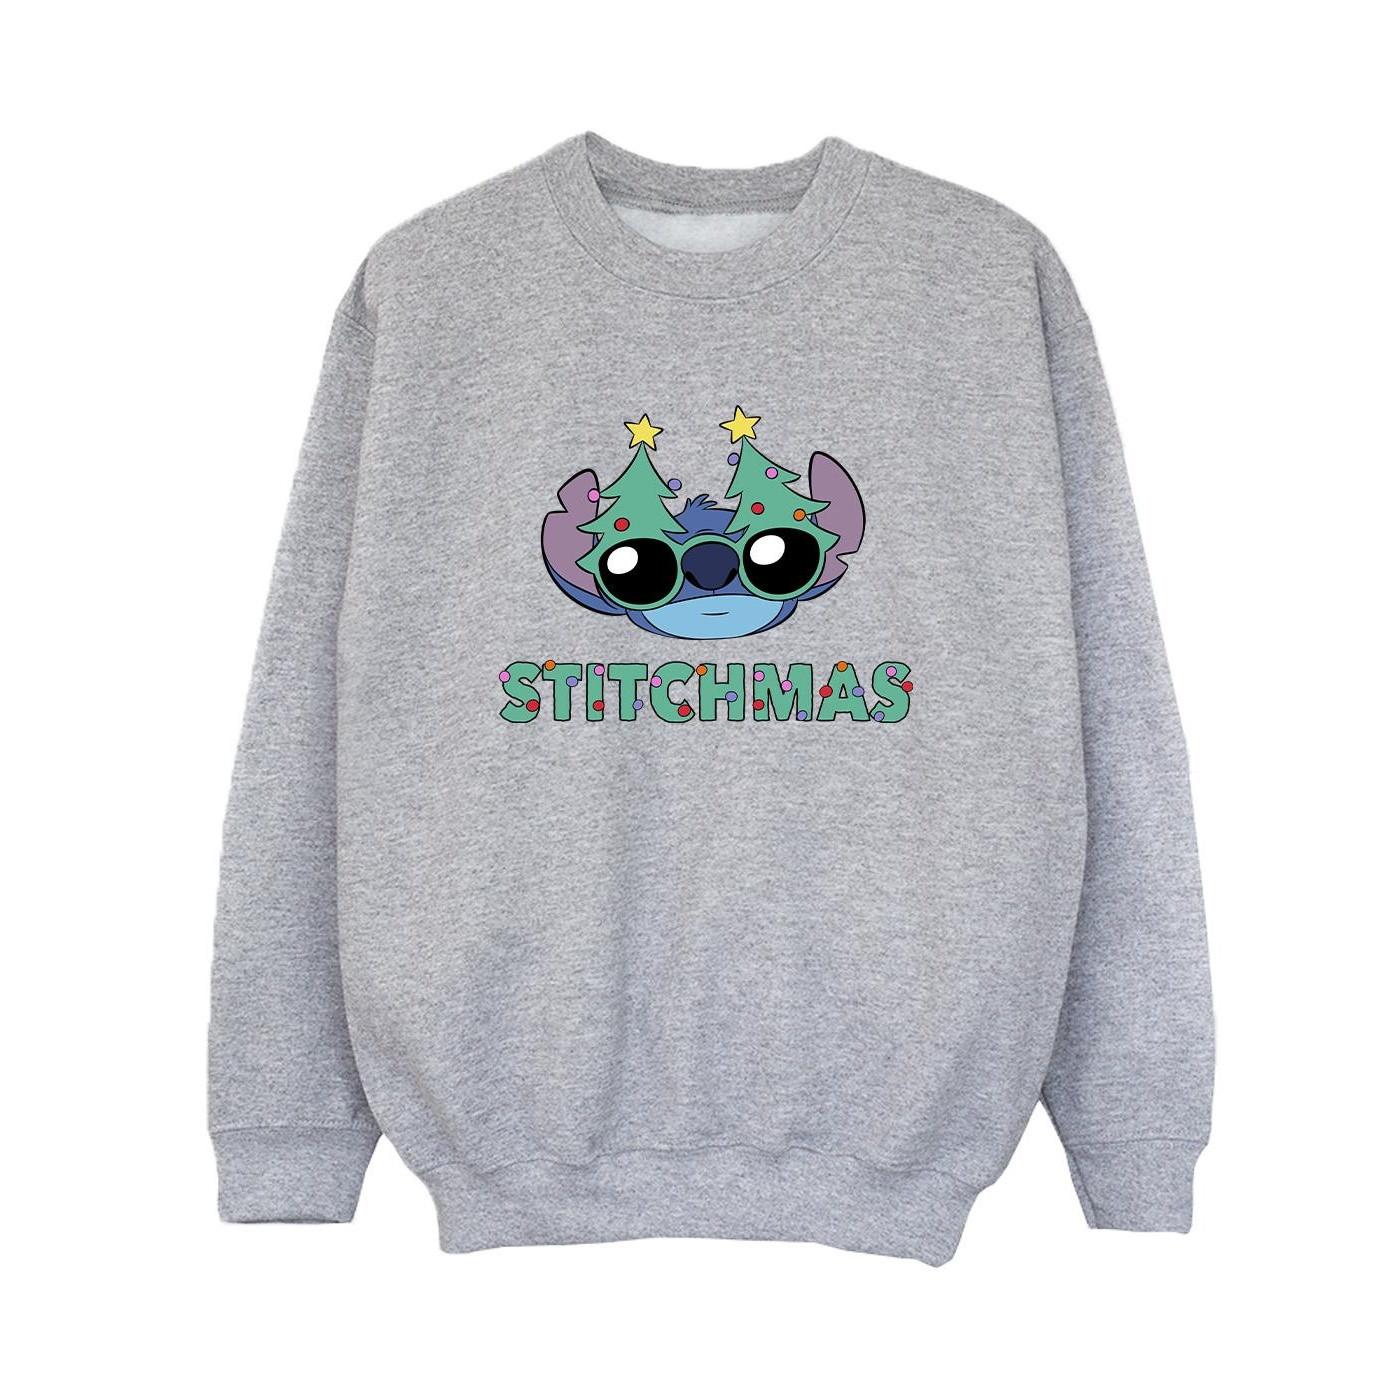 Lilo & Stitch Stitchmas Glasses Sweatshirt Jungen Grau 152-158 von Disney